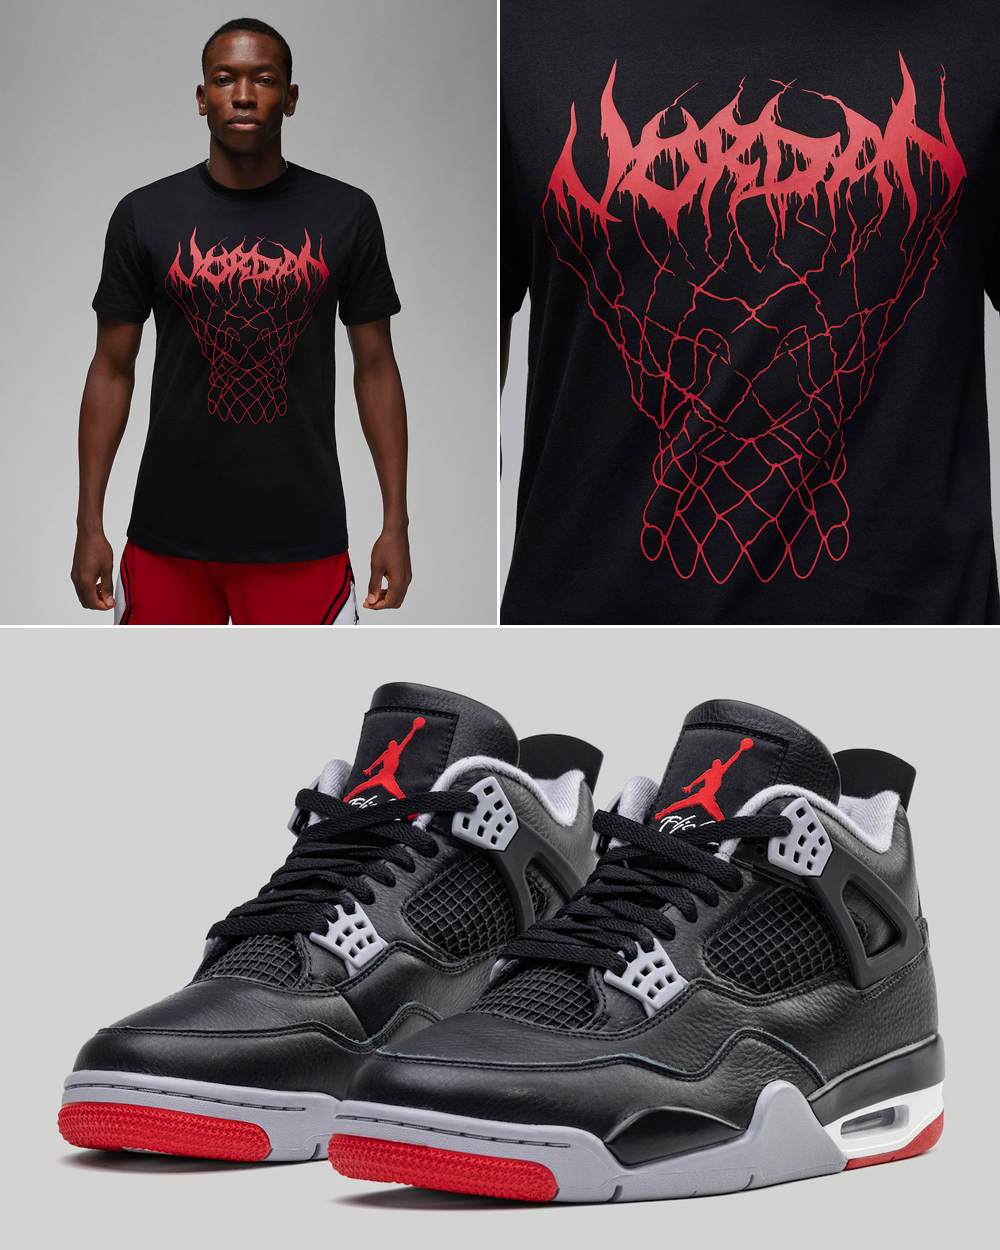 Air-Jordan-4-Bred-Reimagined-Matching-T-Shirt